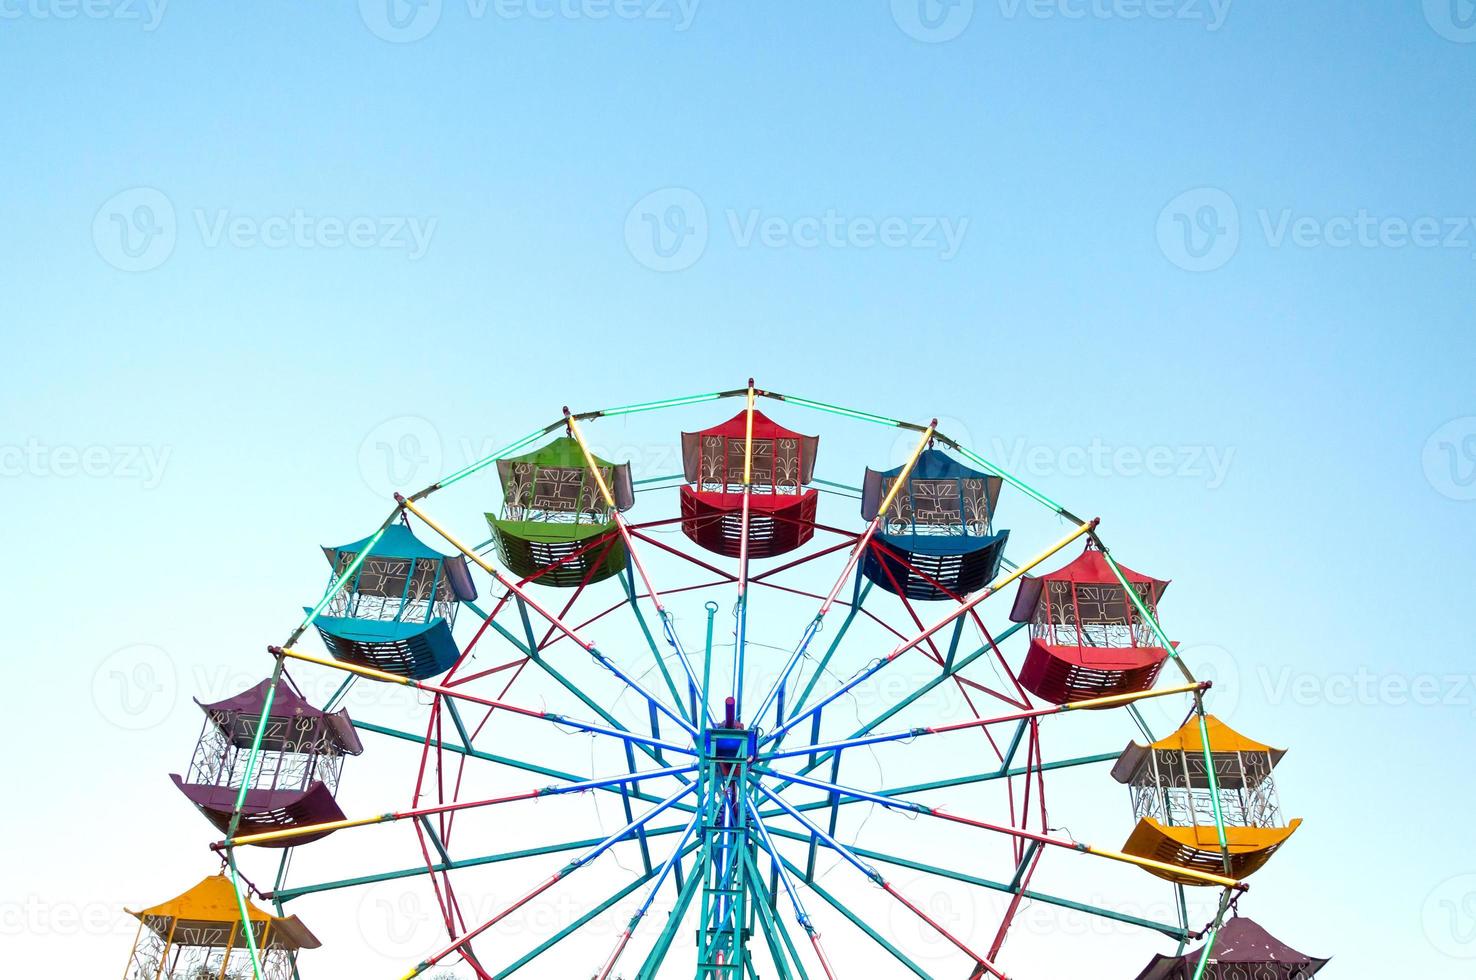 grande roue joueur des enfants amusants avec ciel bleu, grande roue ancienne et vintage photo